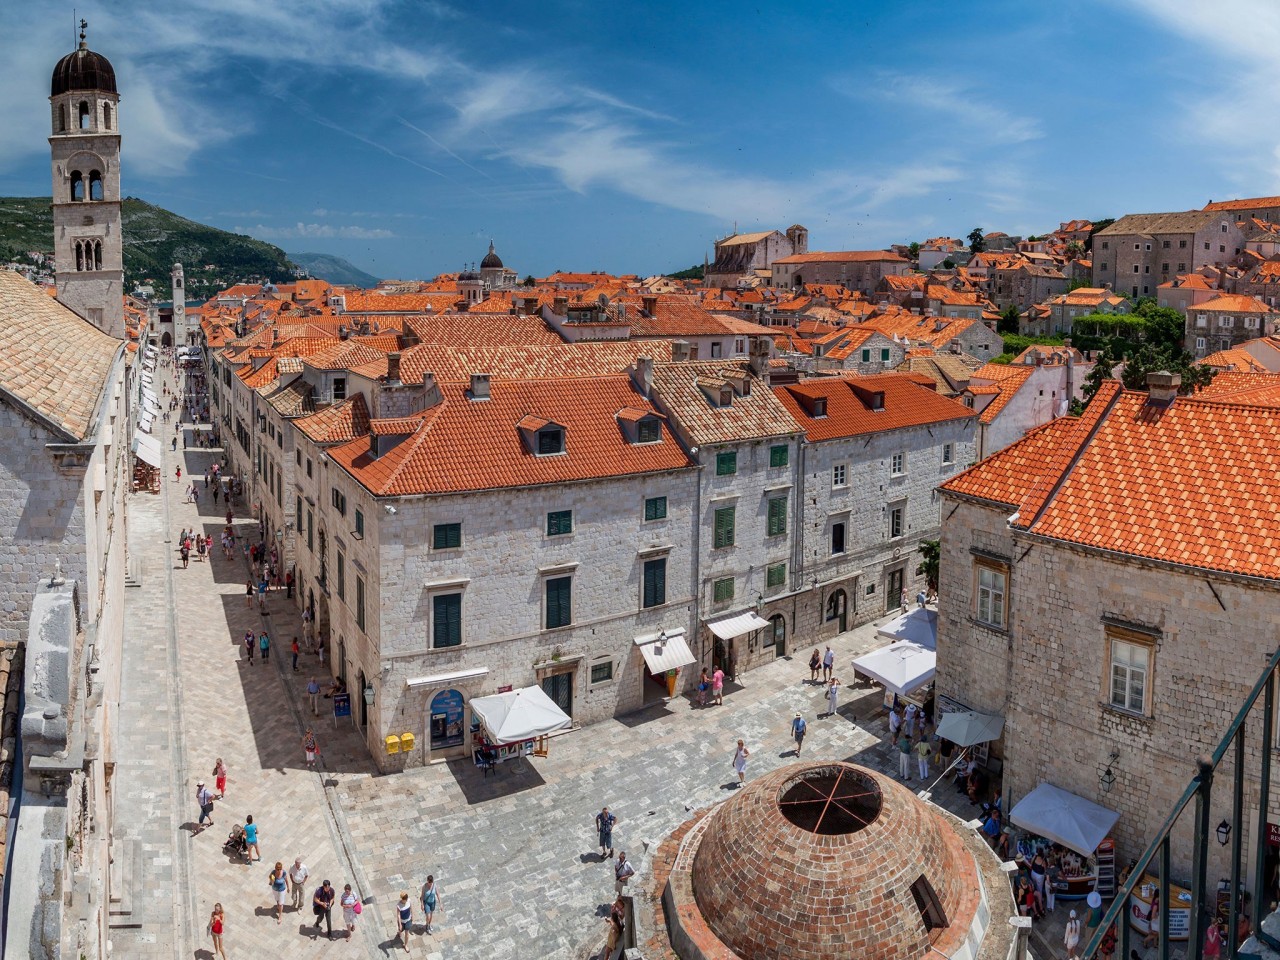  Старый город Дубровника, Хорватия (Королевская Гавань)